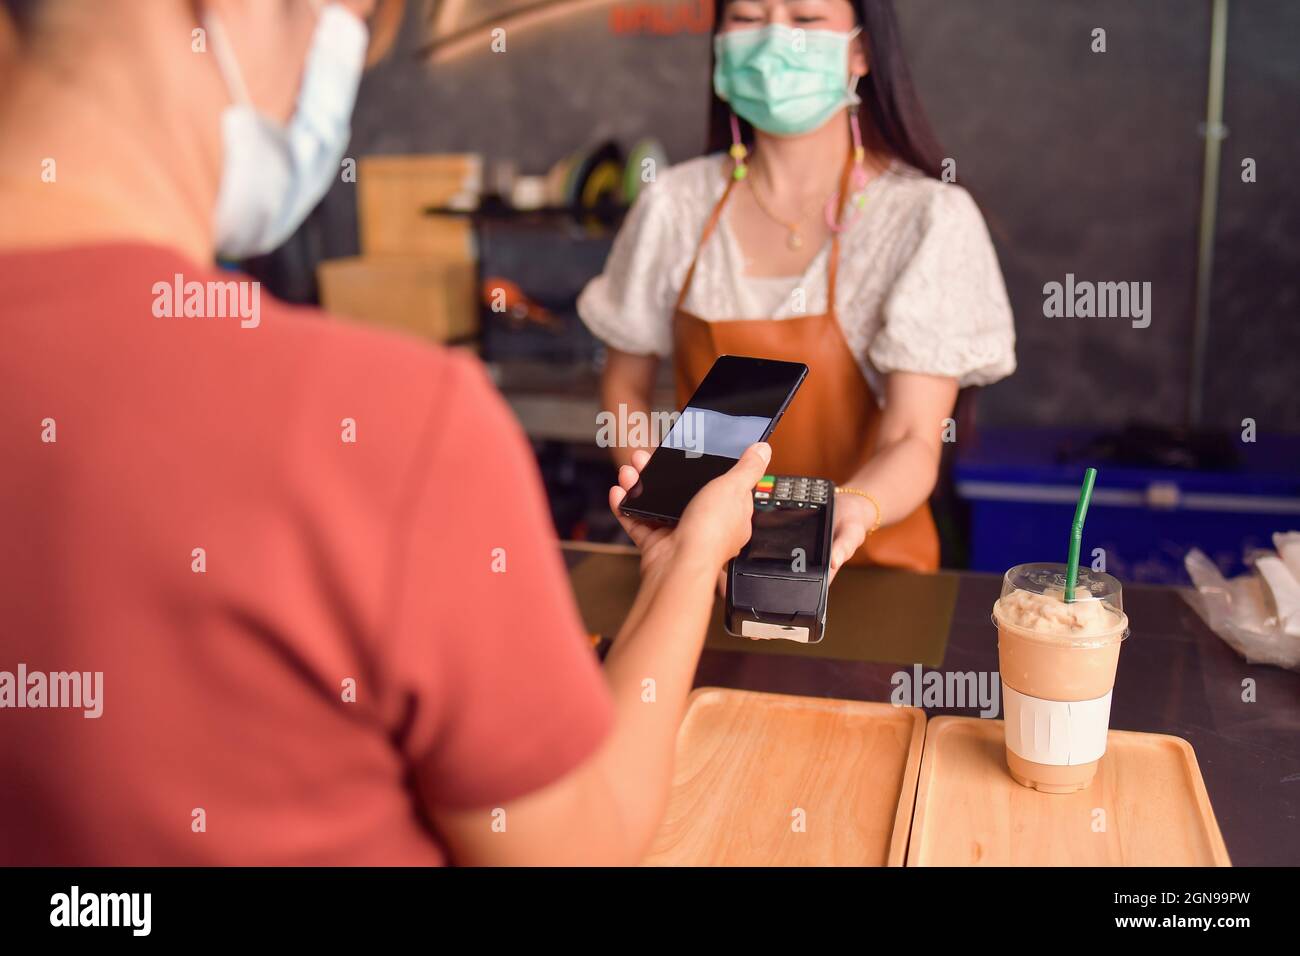 Frau, die das Smartphone in der Nähe des elektronischen Bezahlautomaten hält Stockfoto